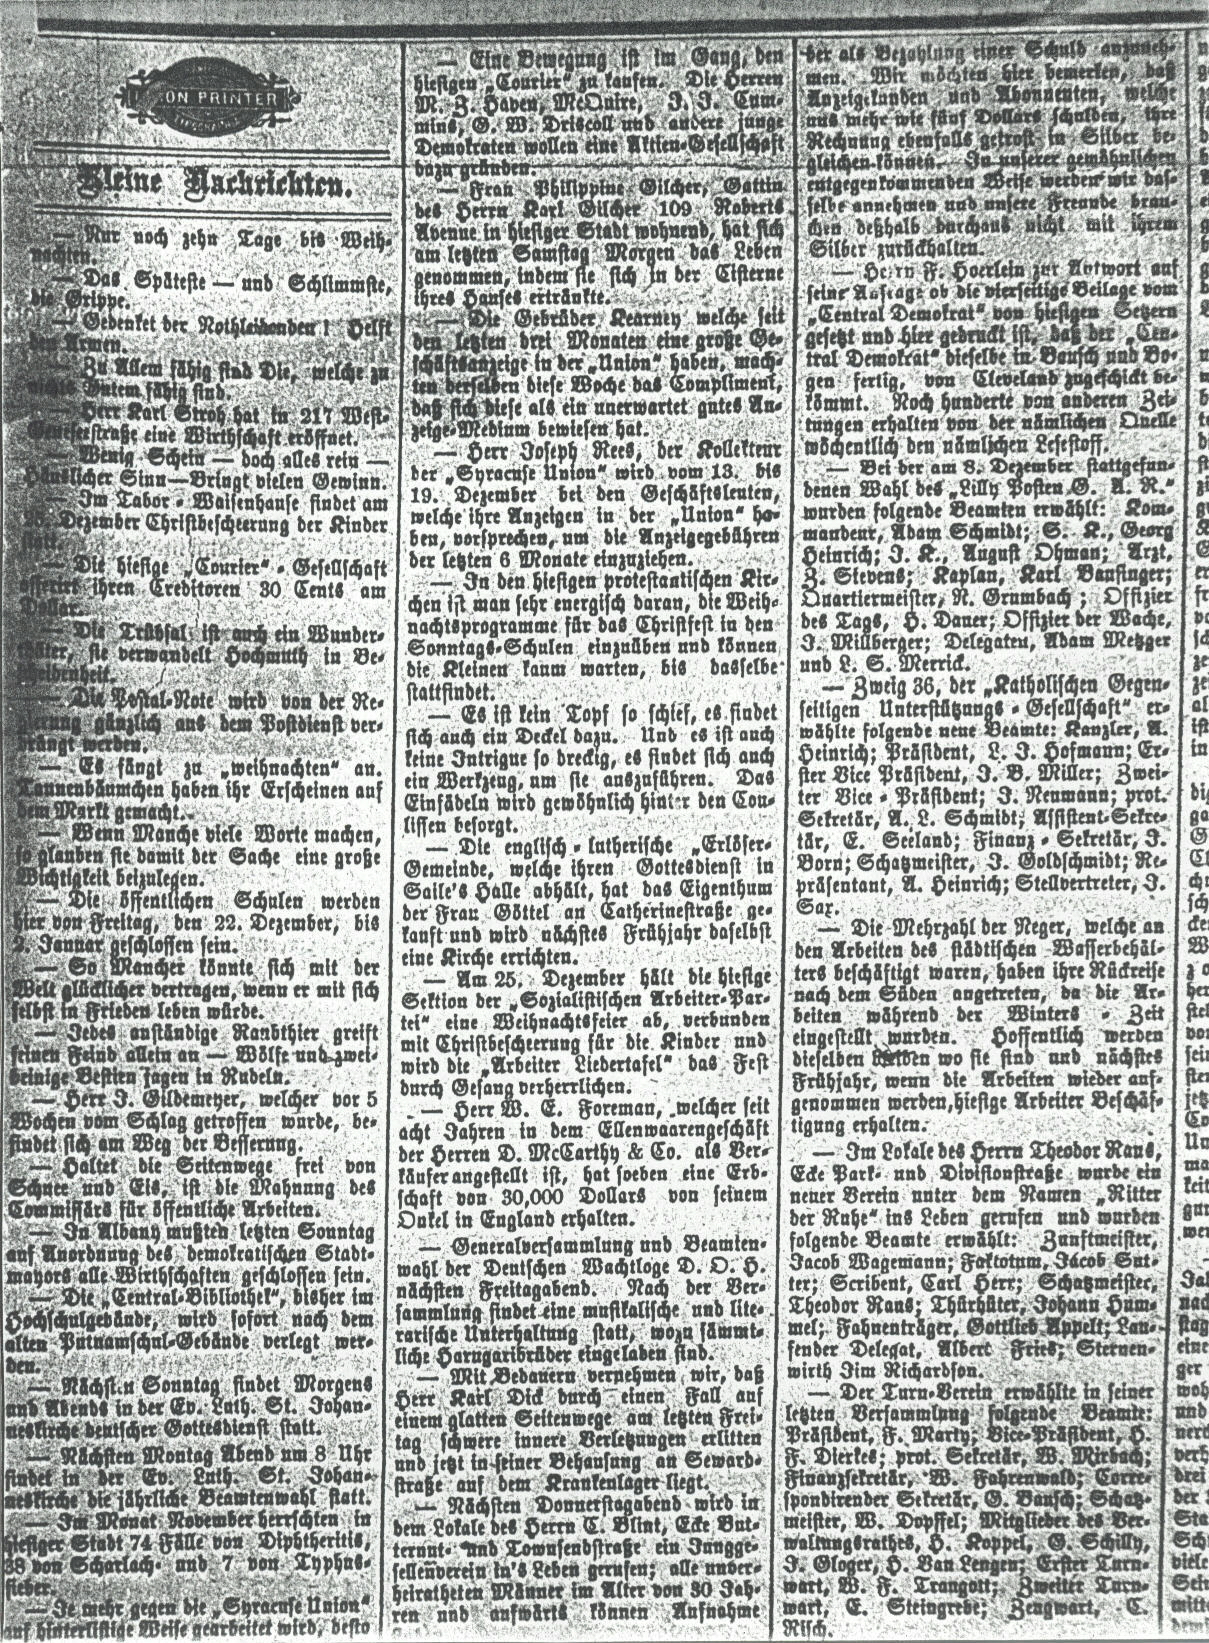 Syracuse Union, 13 December 1893, 
page 5, col. 2